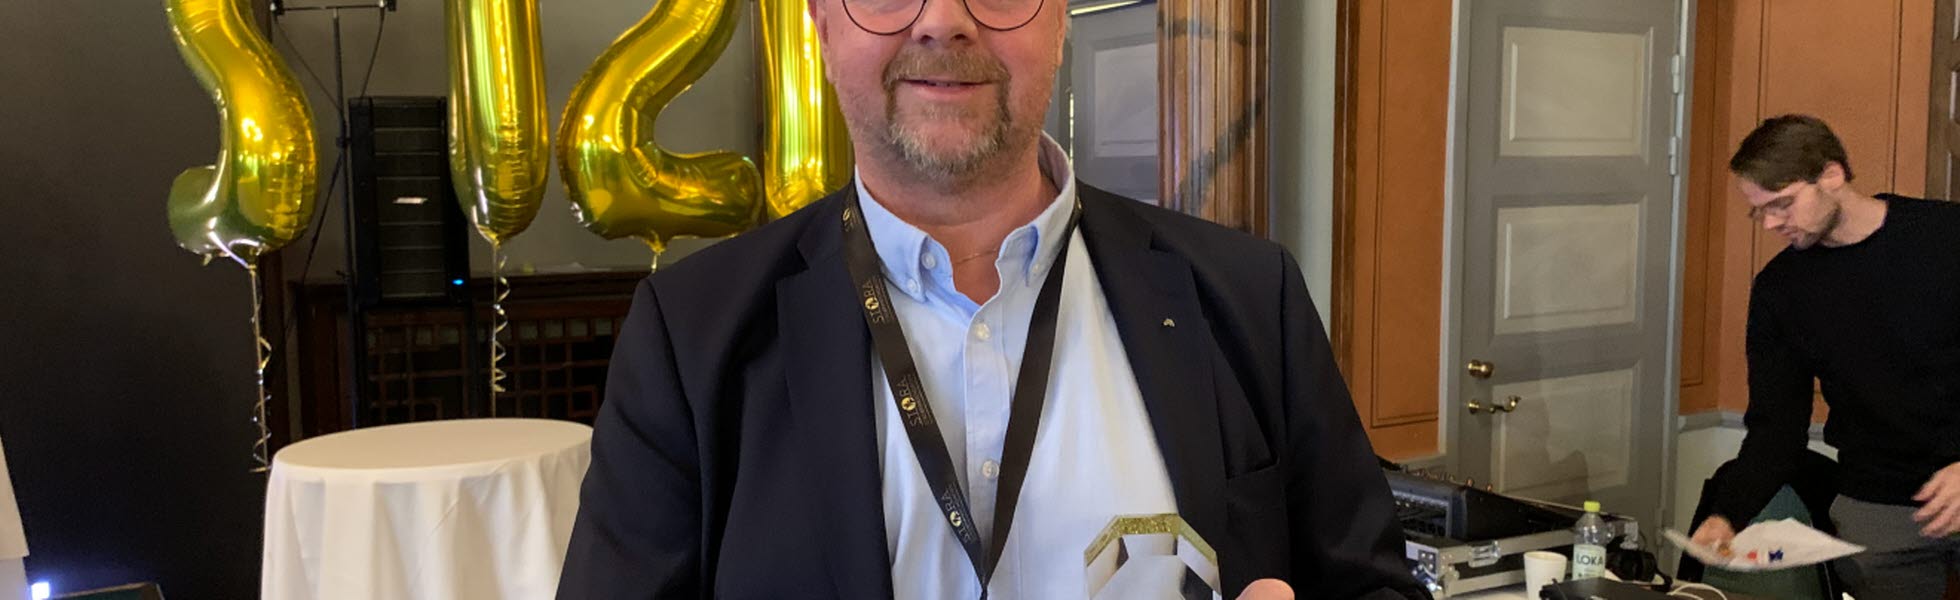 Fastighets ordförande Magnus Pettersson tog emot priset för 2020, som gick till alla Sveriges städare.